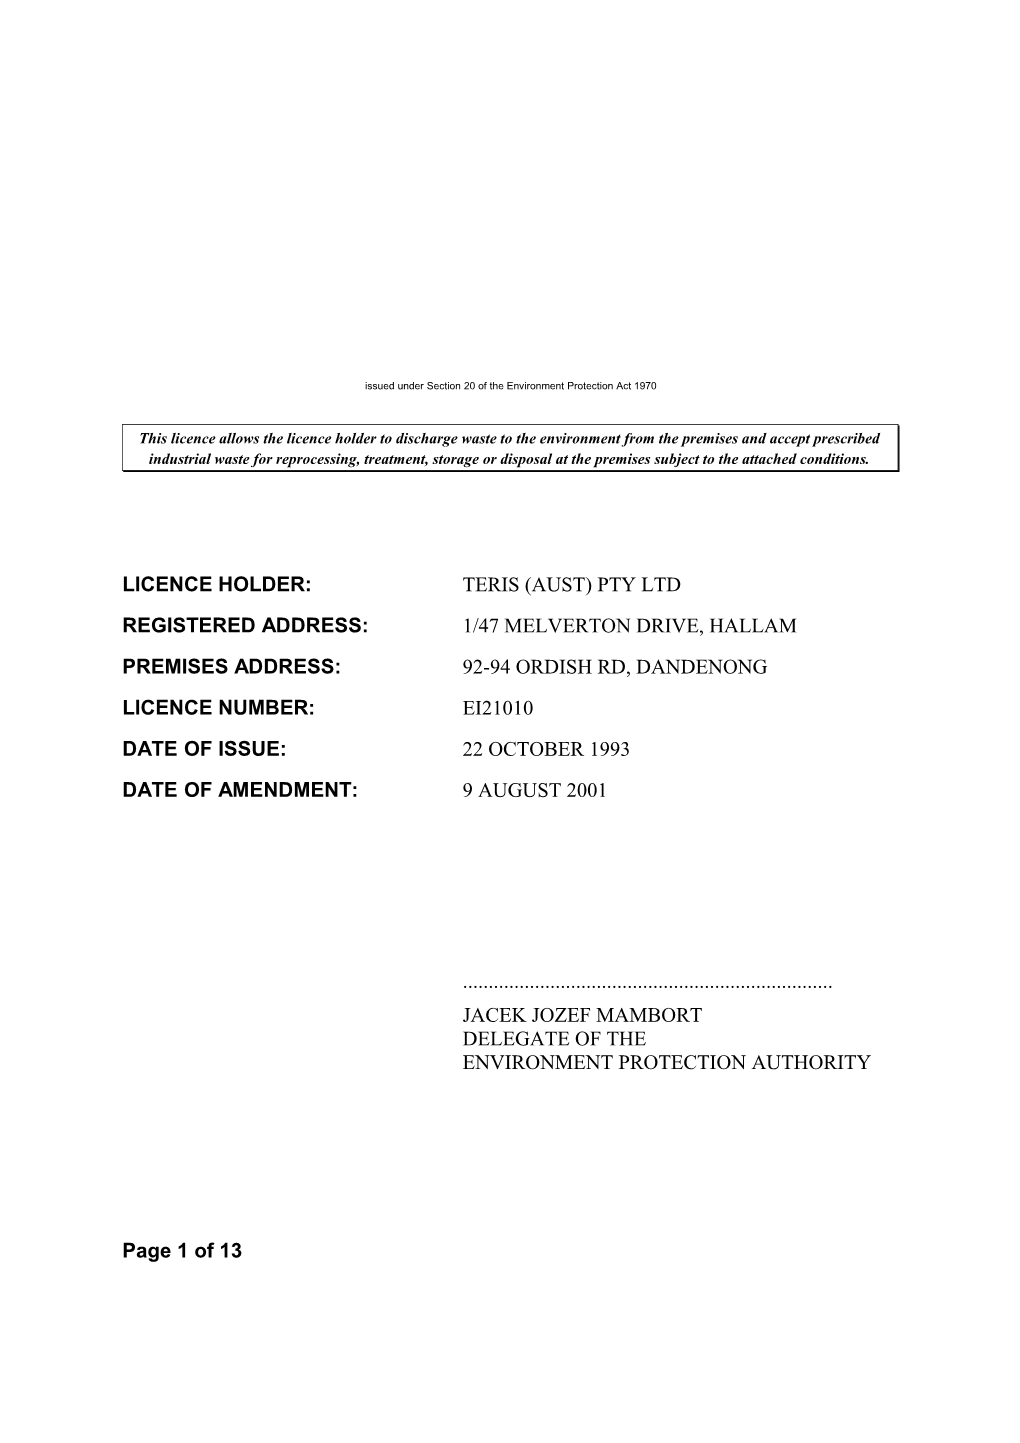 EPA Waste Discharge Licence No. EI21010